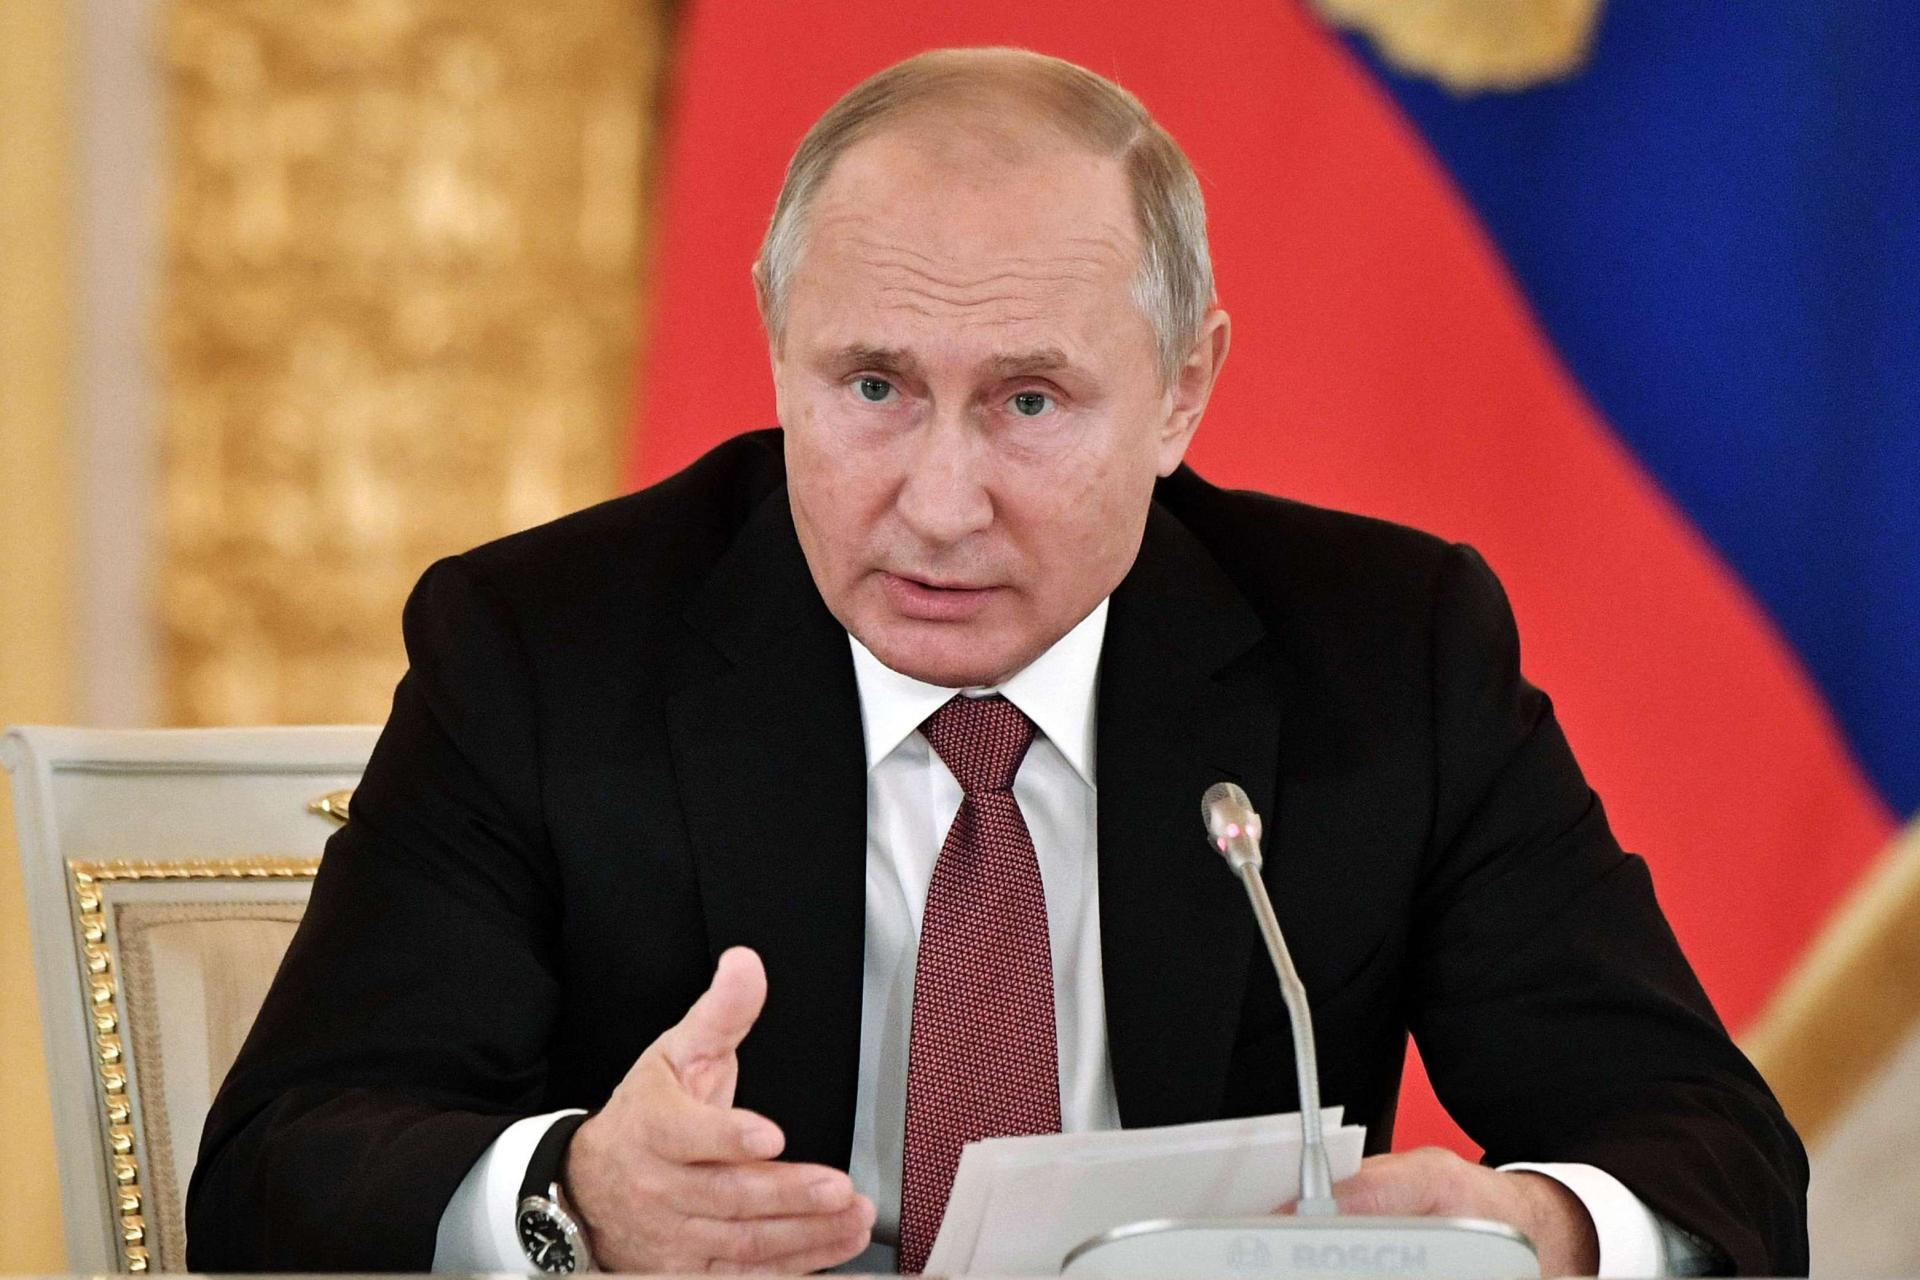   بوتين يصدق على اتفاق تمديد معاهدة ستارت مع أمريكا